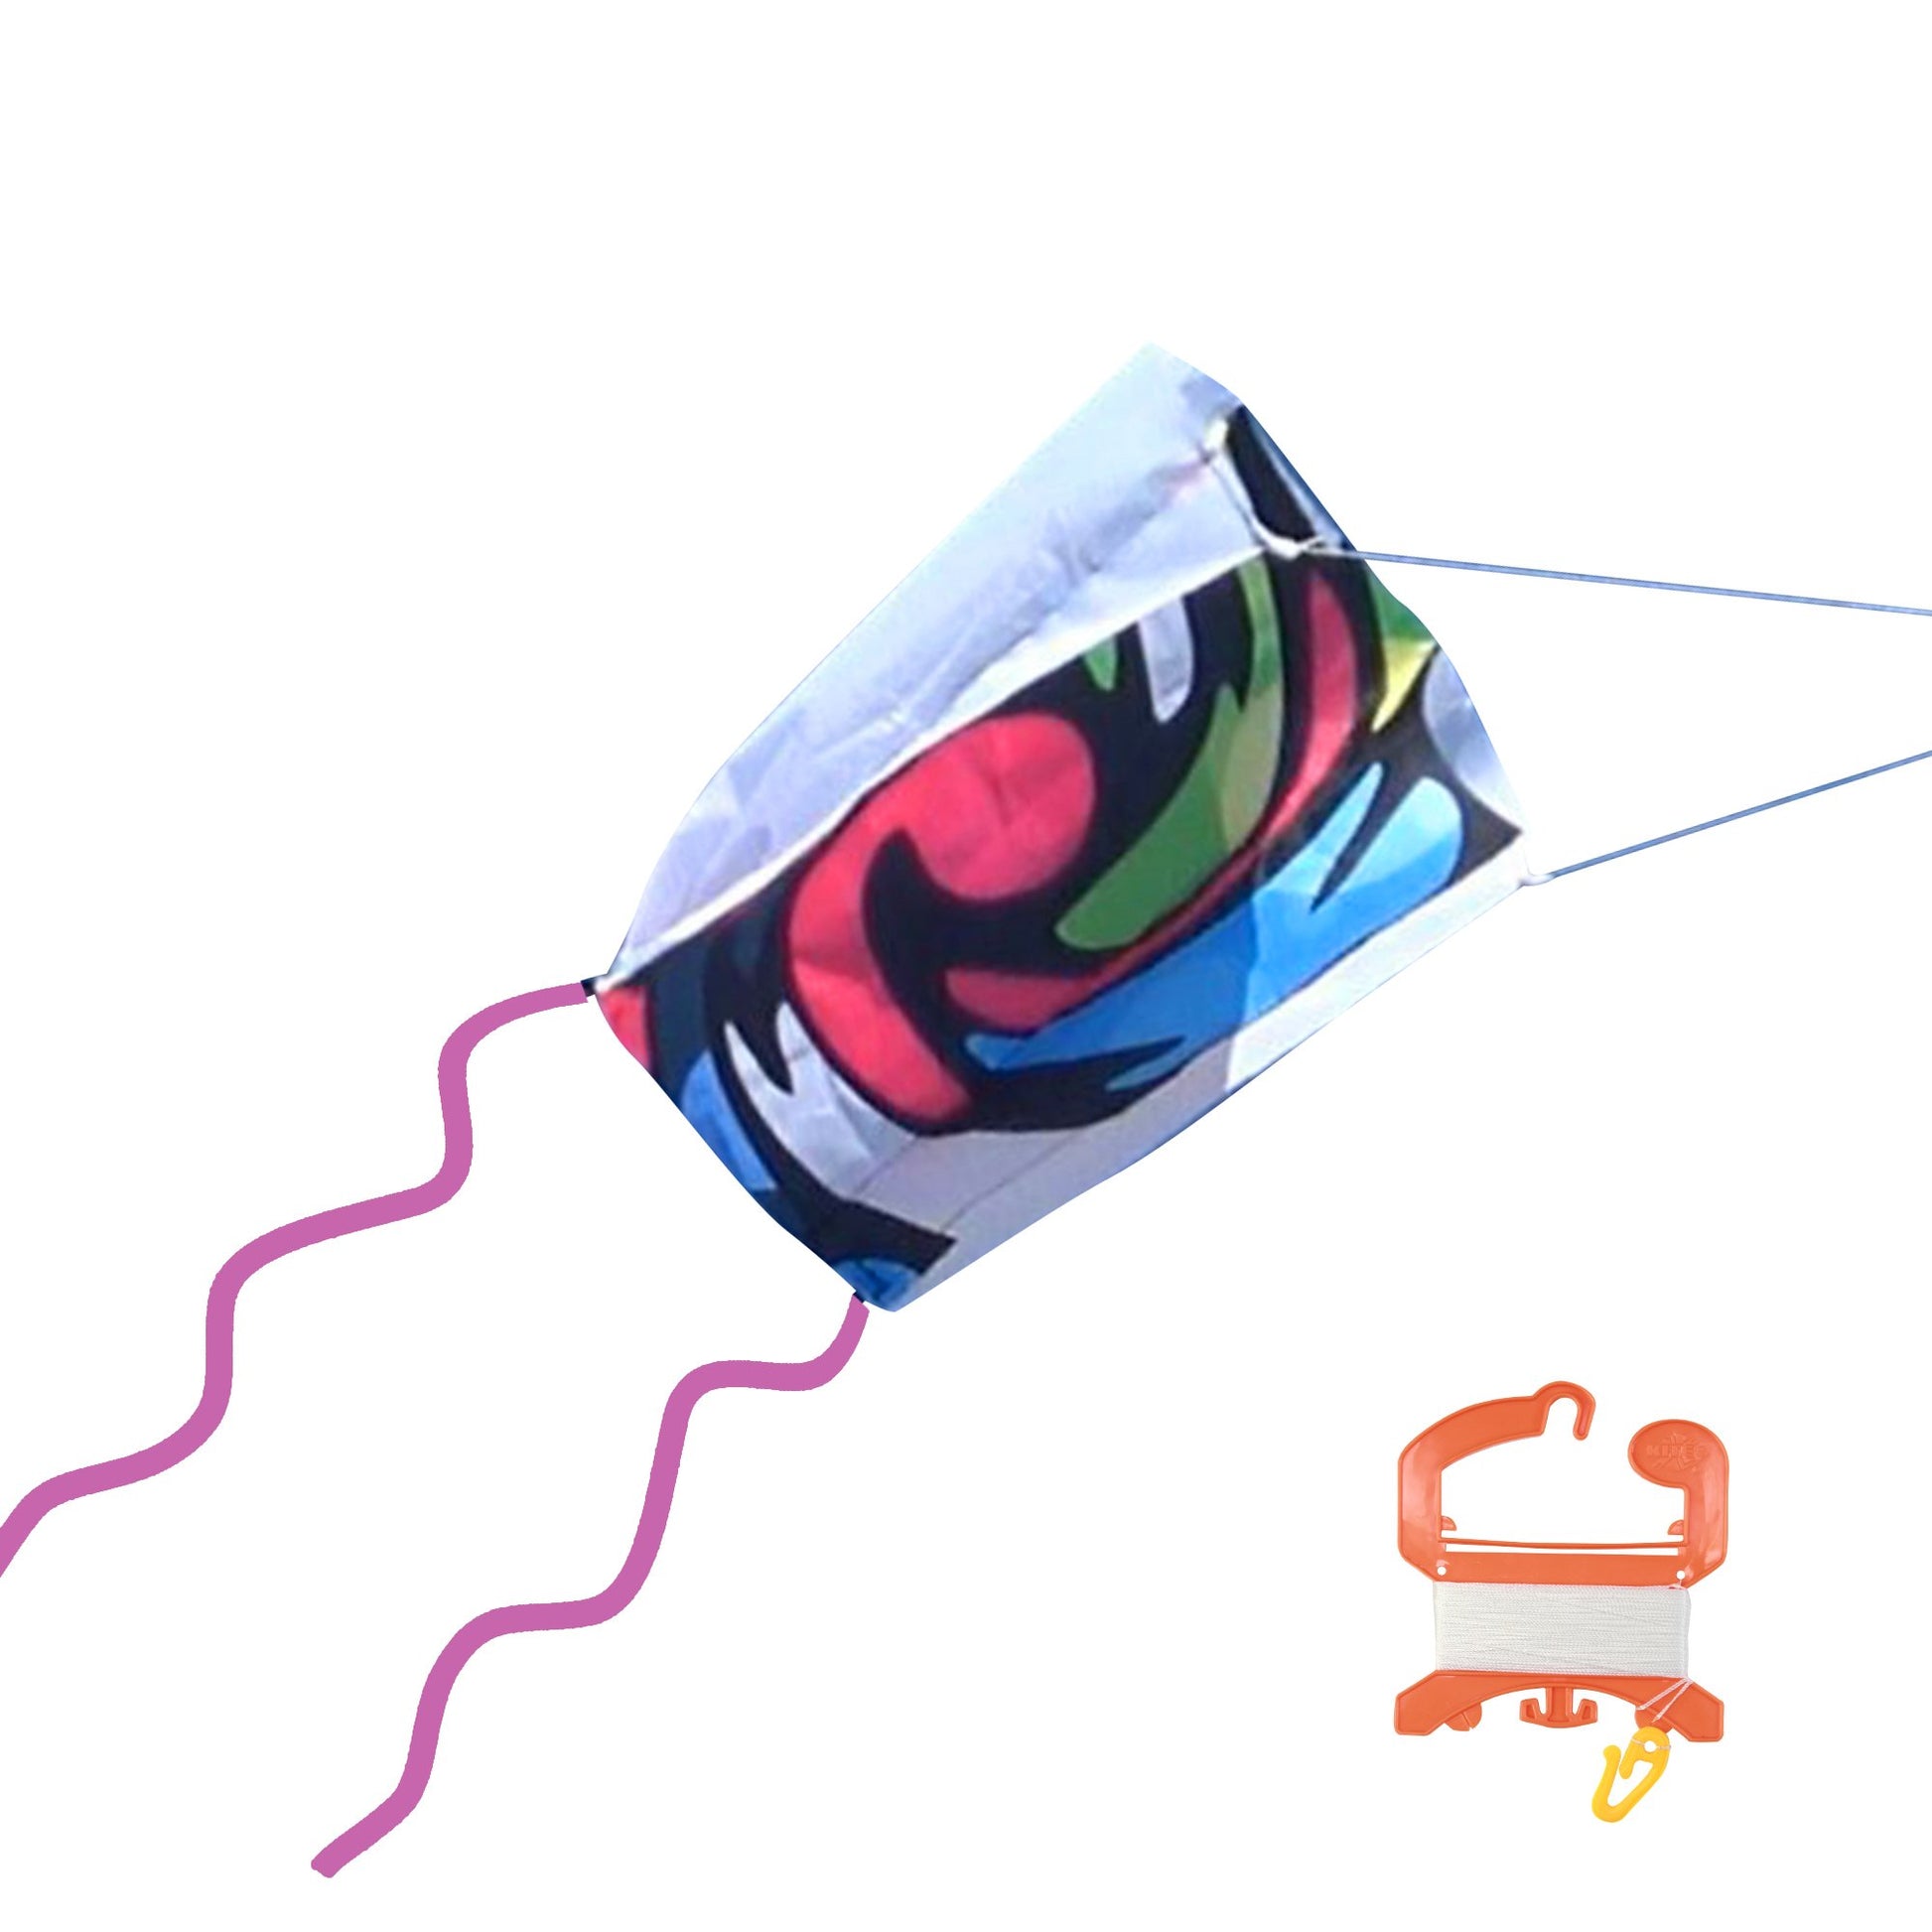 X Kites Pocket Kite Void Nylon Kite photo showing handle